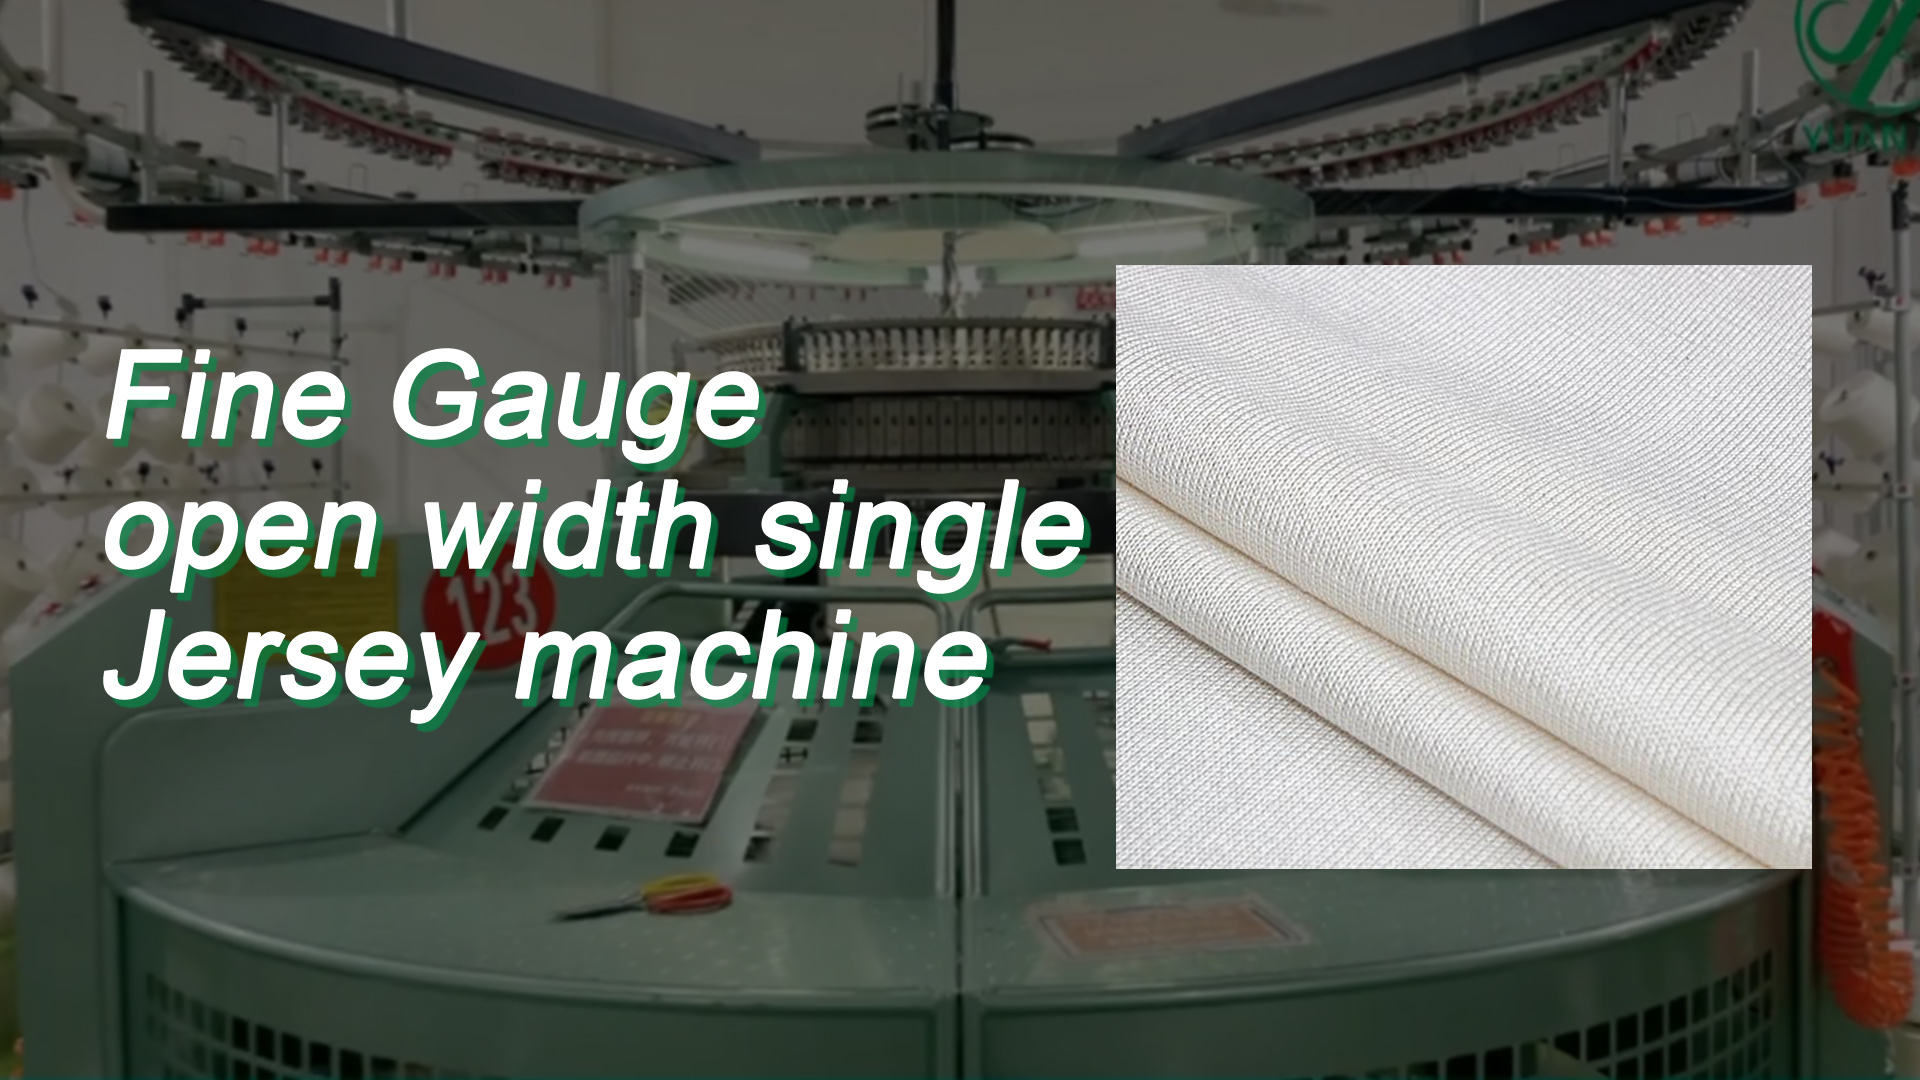 Fine Gauge mesin Jersey tunggal lebar terbuka